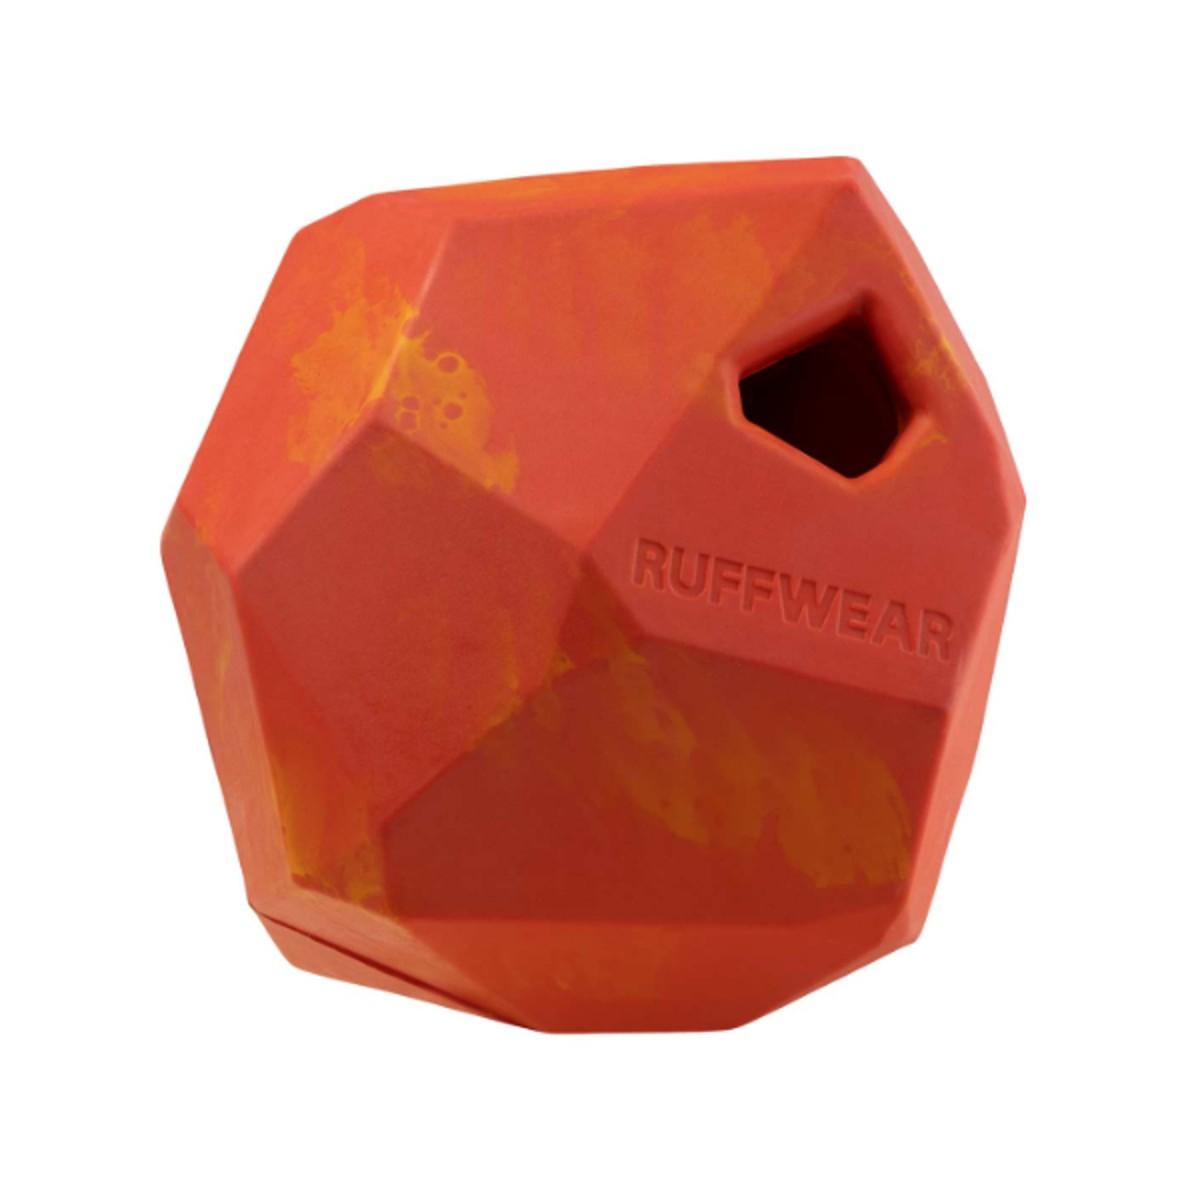 Ruffwear Gnawt-a-Rock Rubber Dog Toy - Red Sumac